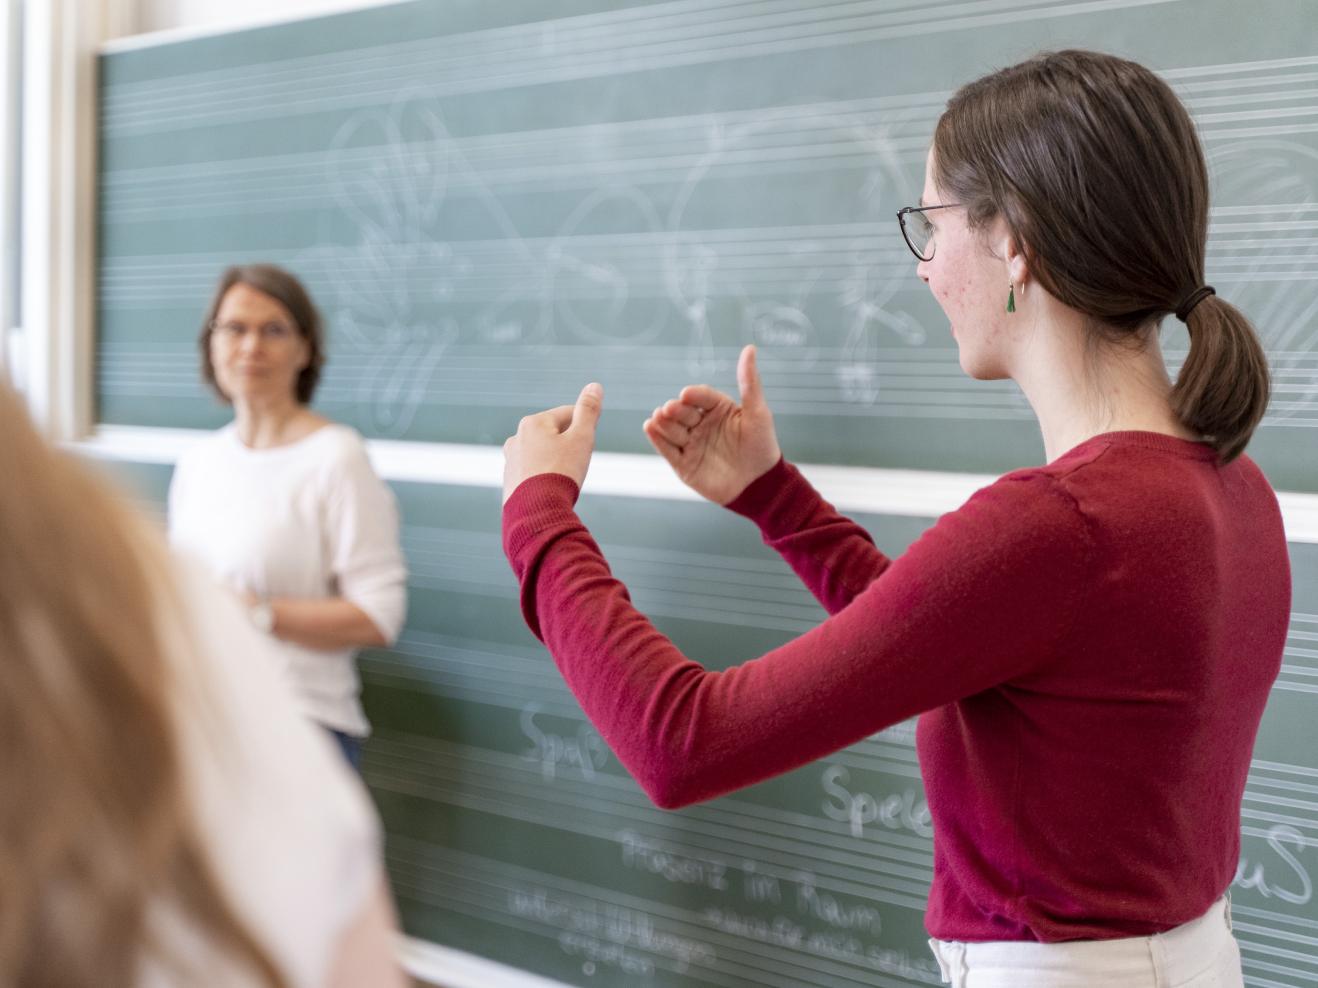 Eine Studentin im roten Pulli steht vor einer Tafel mit Notenlinien und erläutert etwas, dabei gestikuliert sie mit den Händen.